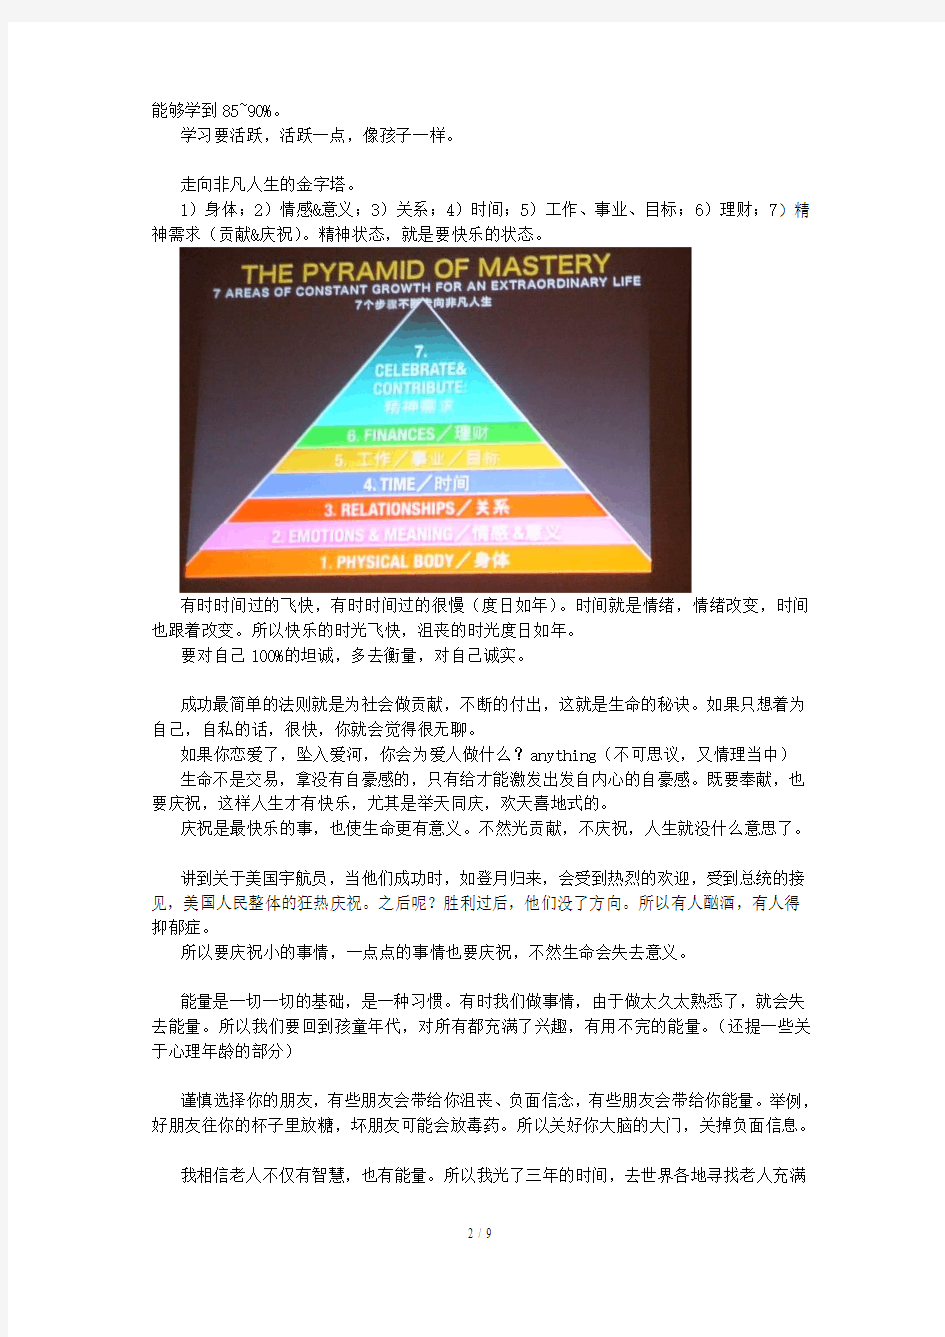 上海超级成功演讲会《成为世界第一的秘诀》